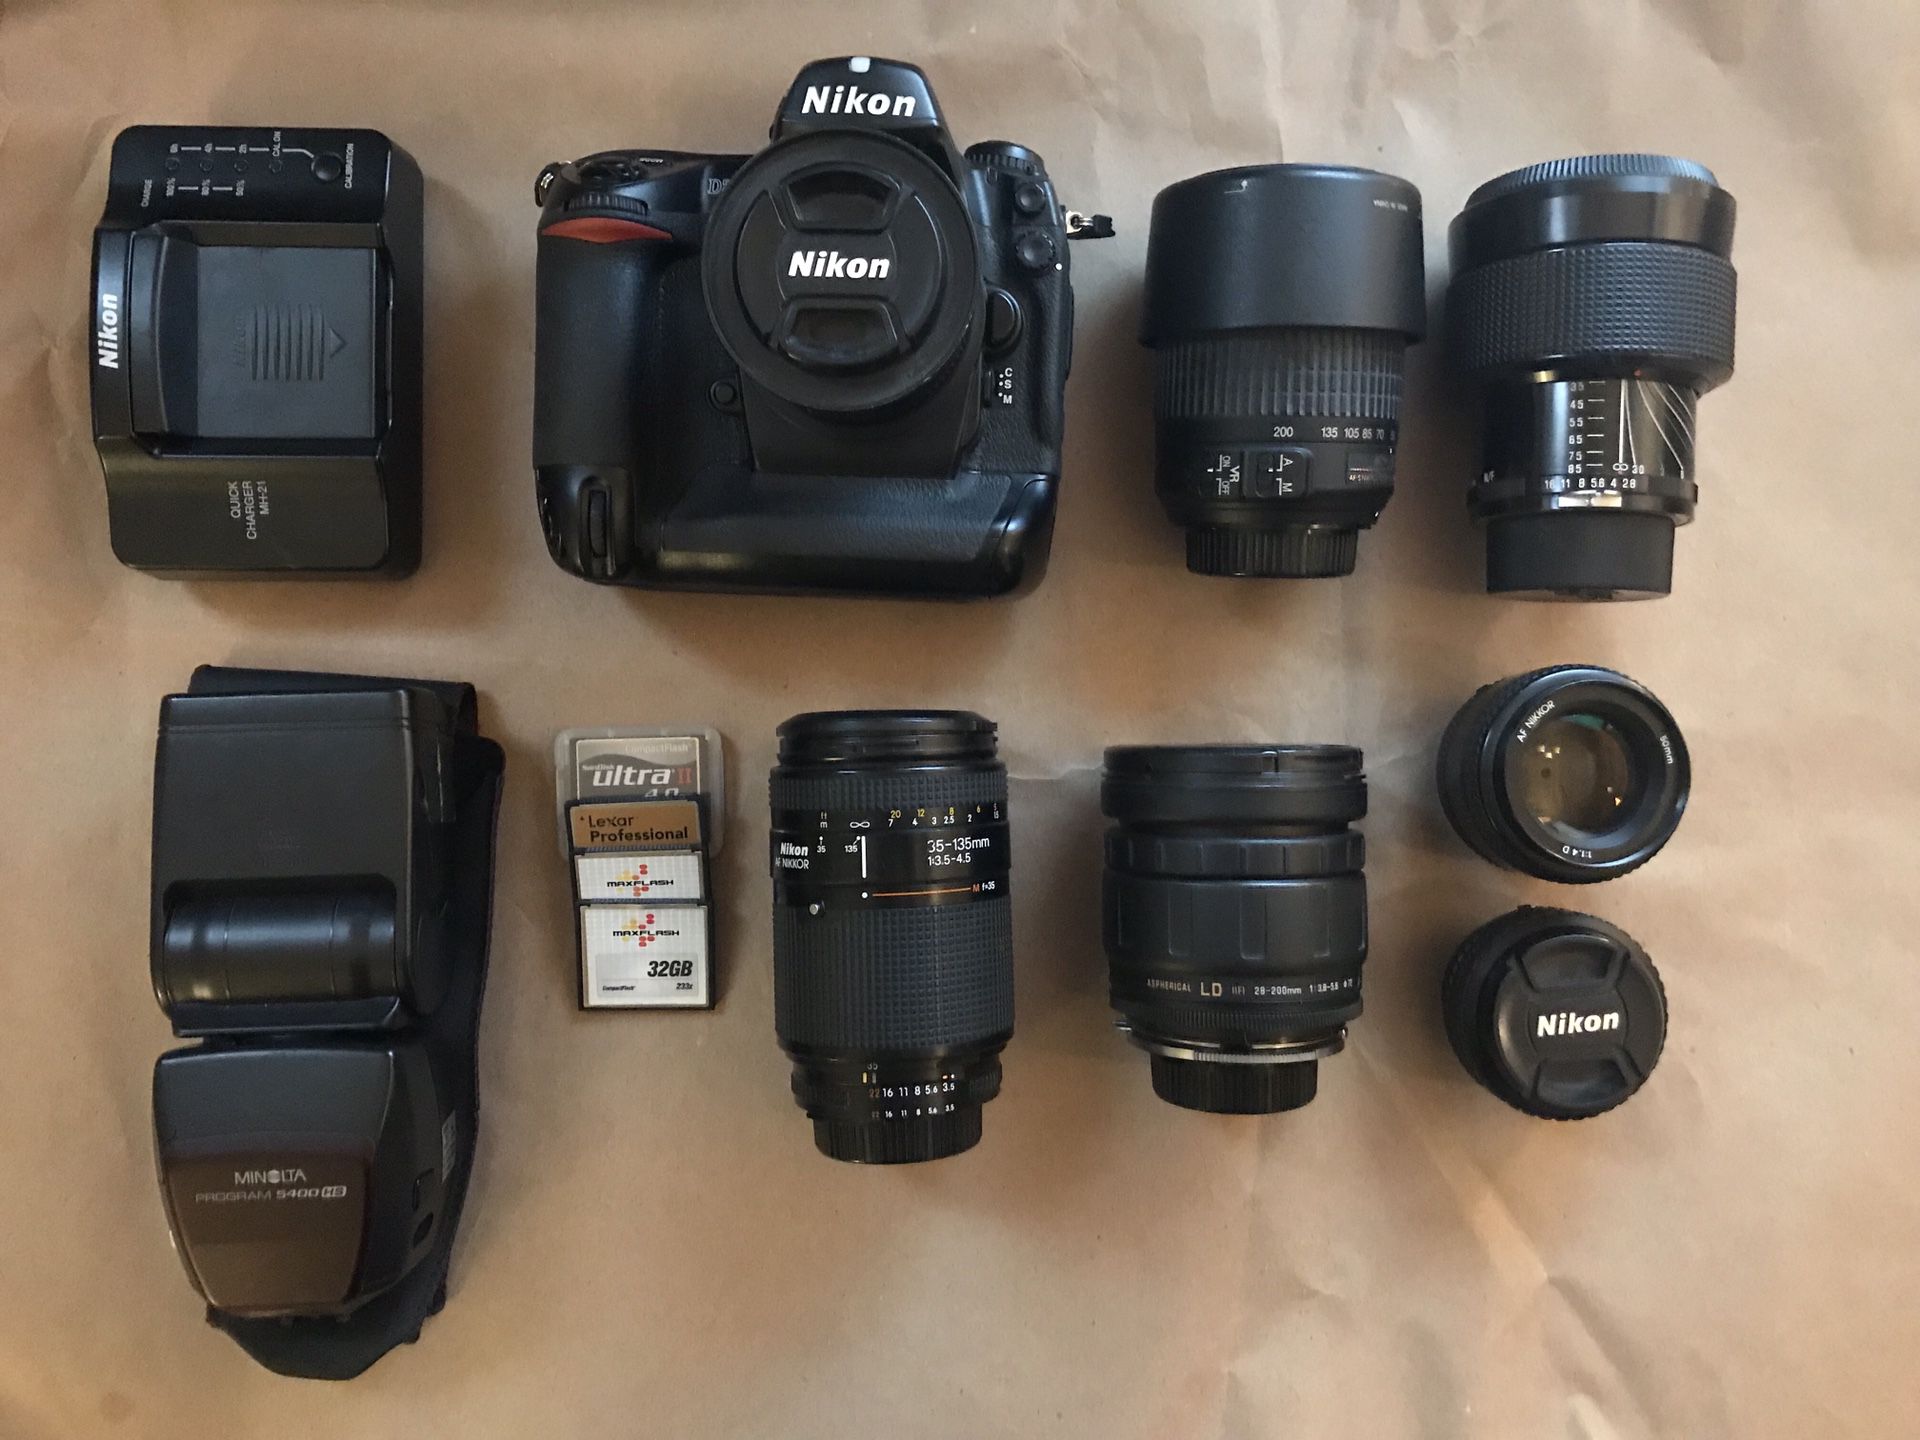 Wanting to trade Nikon D2x Kit (7 lenses) for mini bike